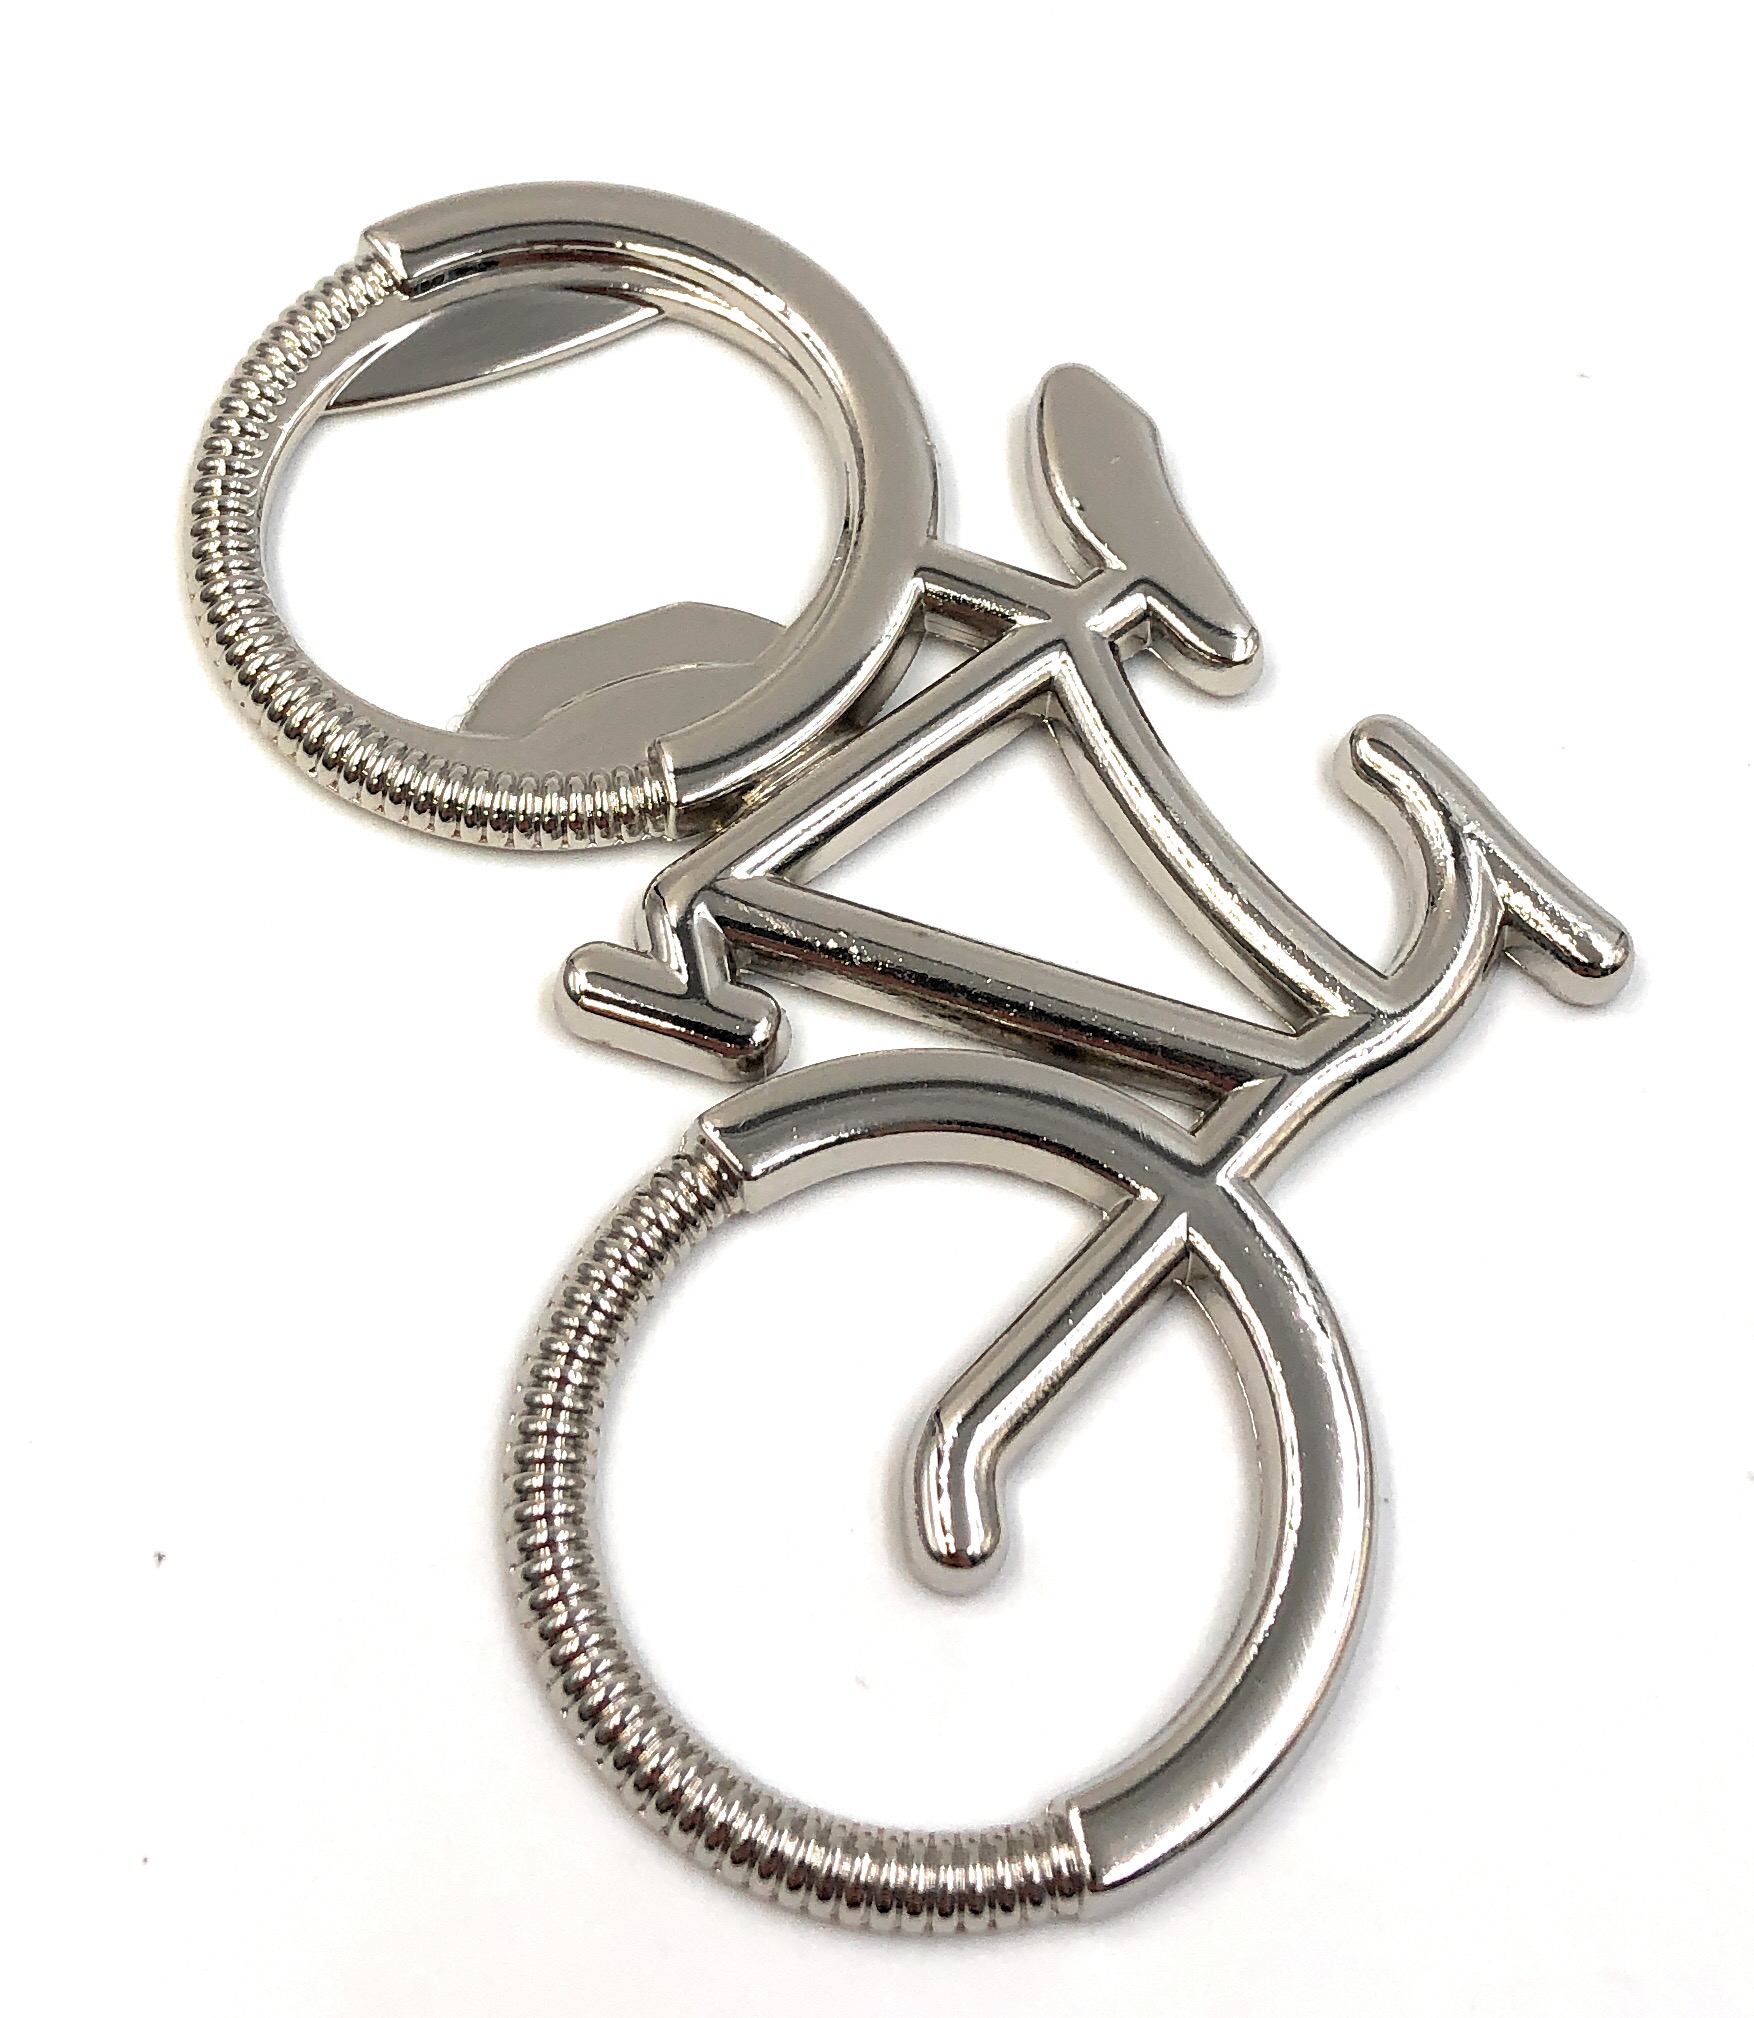 Schlüsselanhänger Metall Edel mit Spiegel Tropfen gedreht Chic Schlüsselring R1 